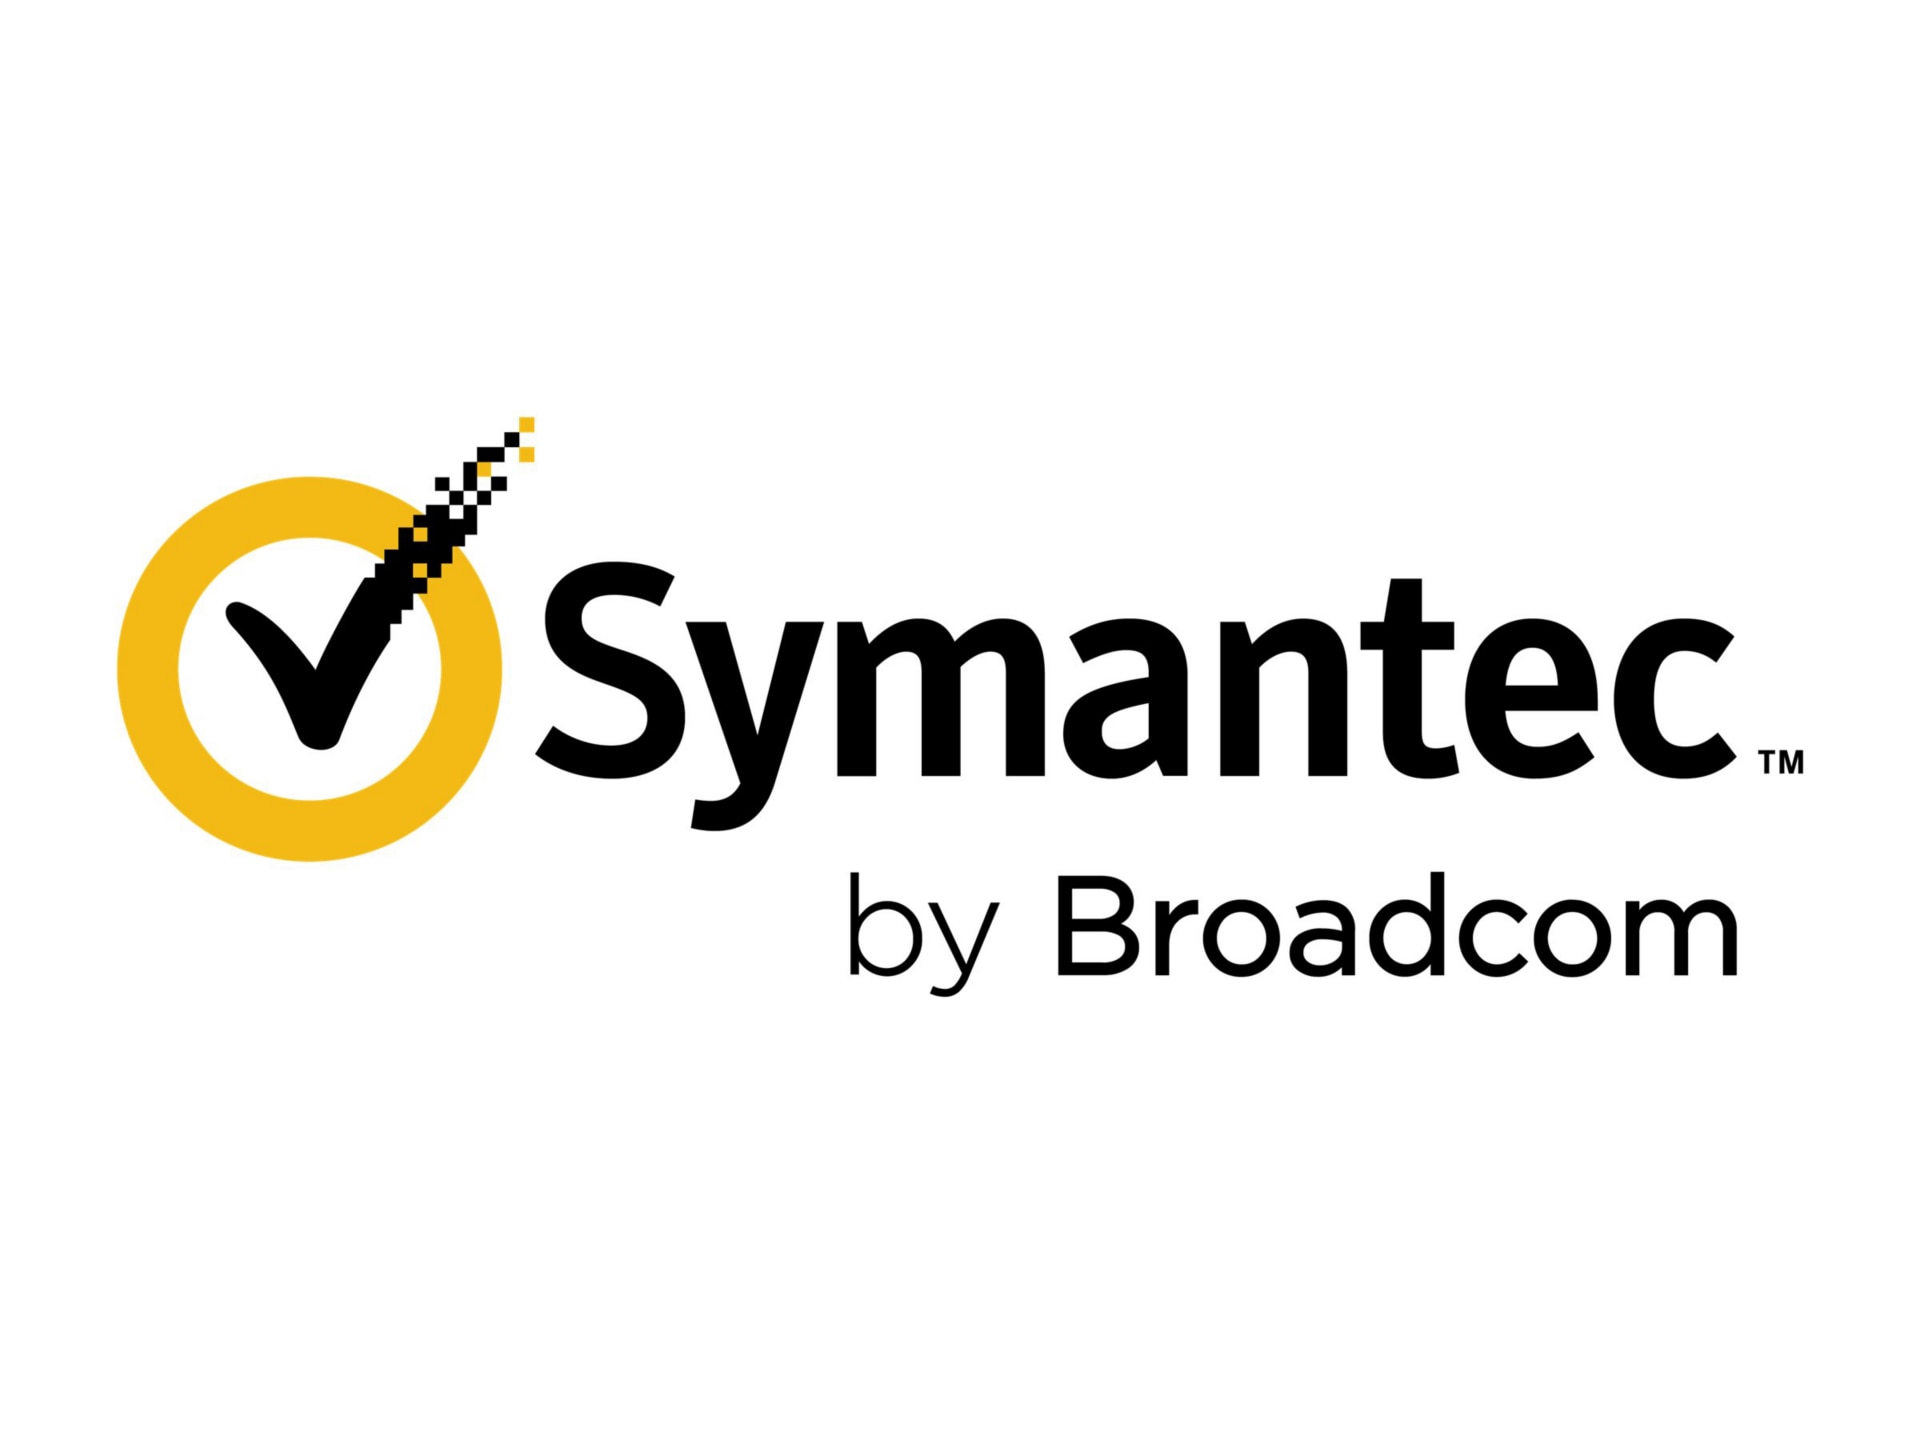 Symantec Asset Management Suite - subscription license (1 year) + Support -